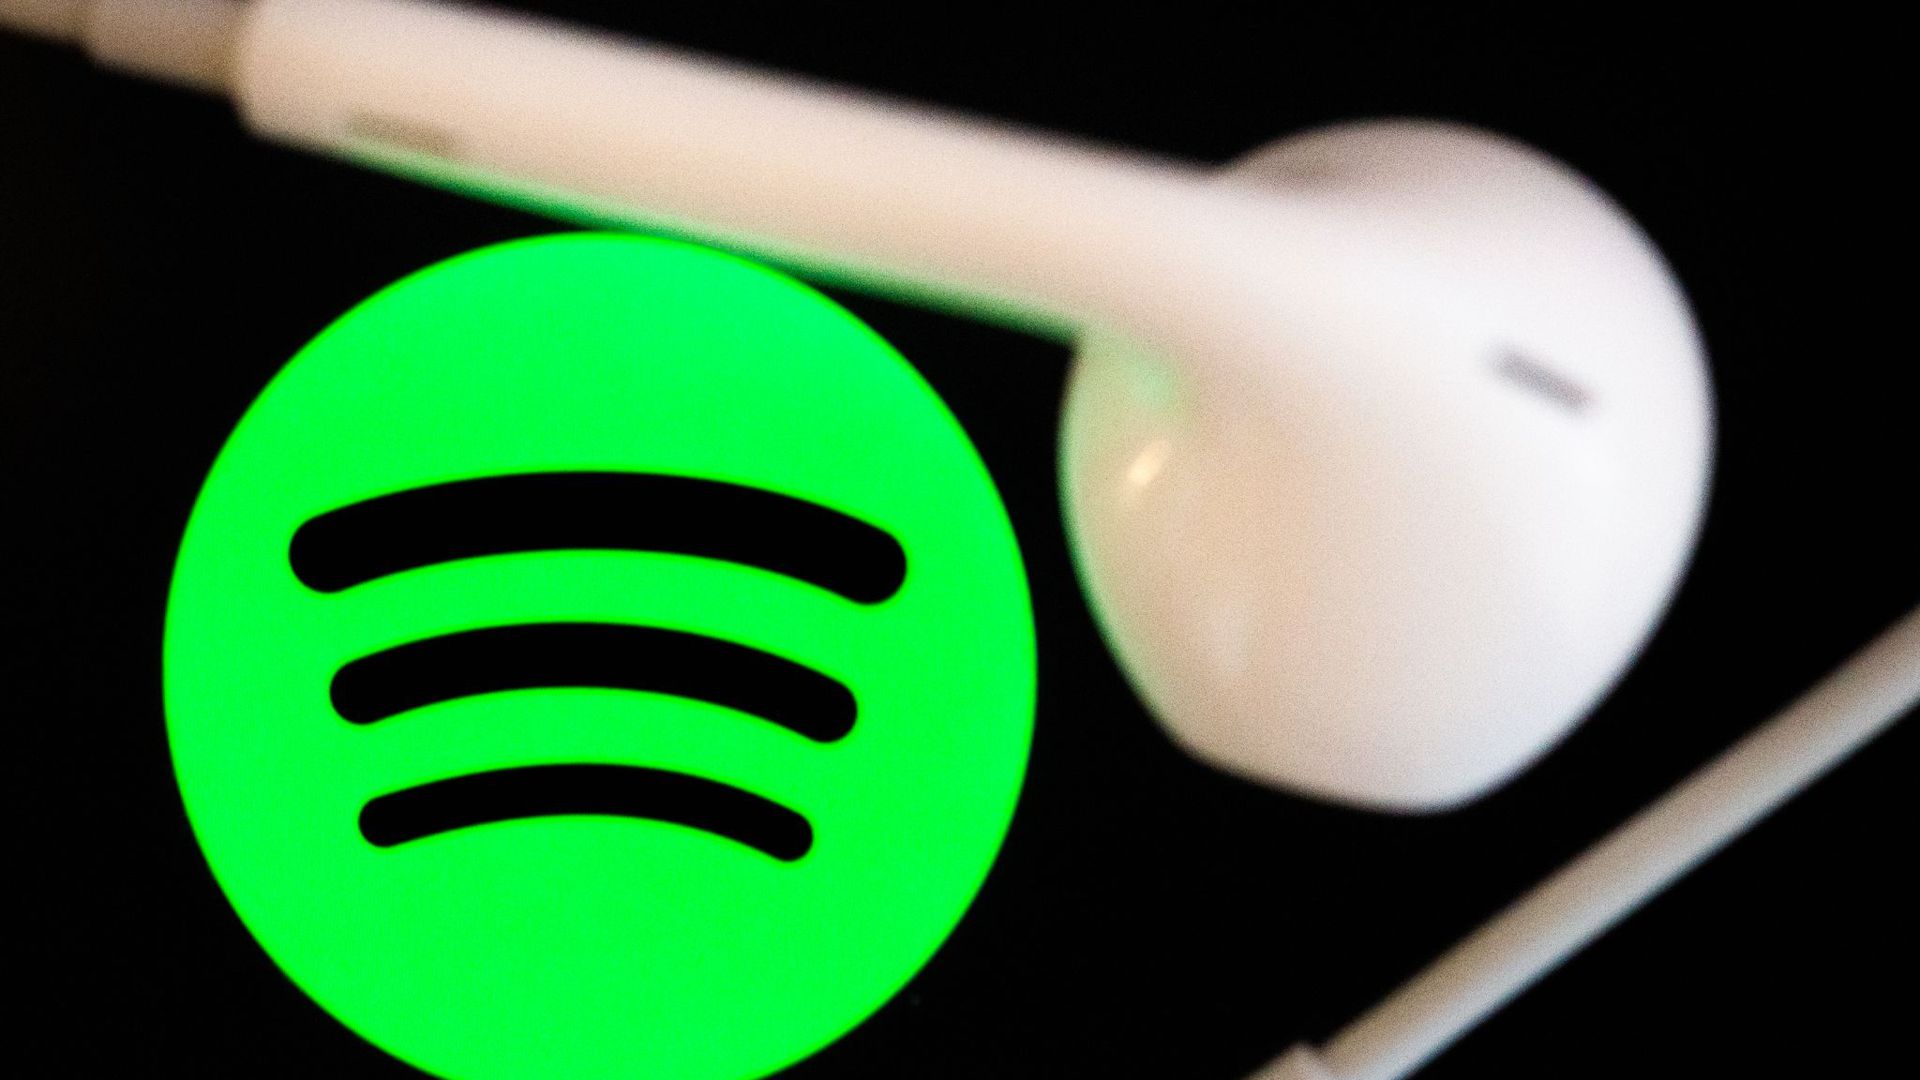 Der Umsatz von Spotify wuchs im vergangenen Quartal auf rund 3,17 Milliarden Euro. Unterm Strich verbuchte der Streamingdienst einen Verlust von 270 Millionen Euro.